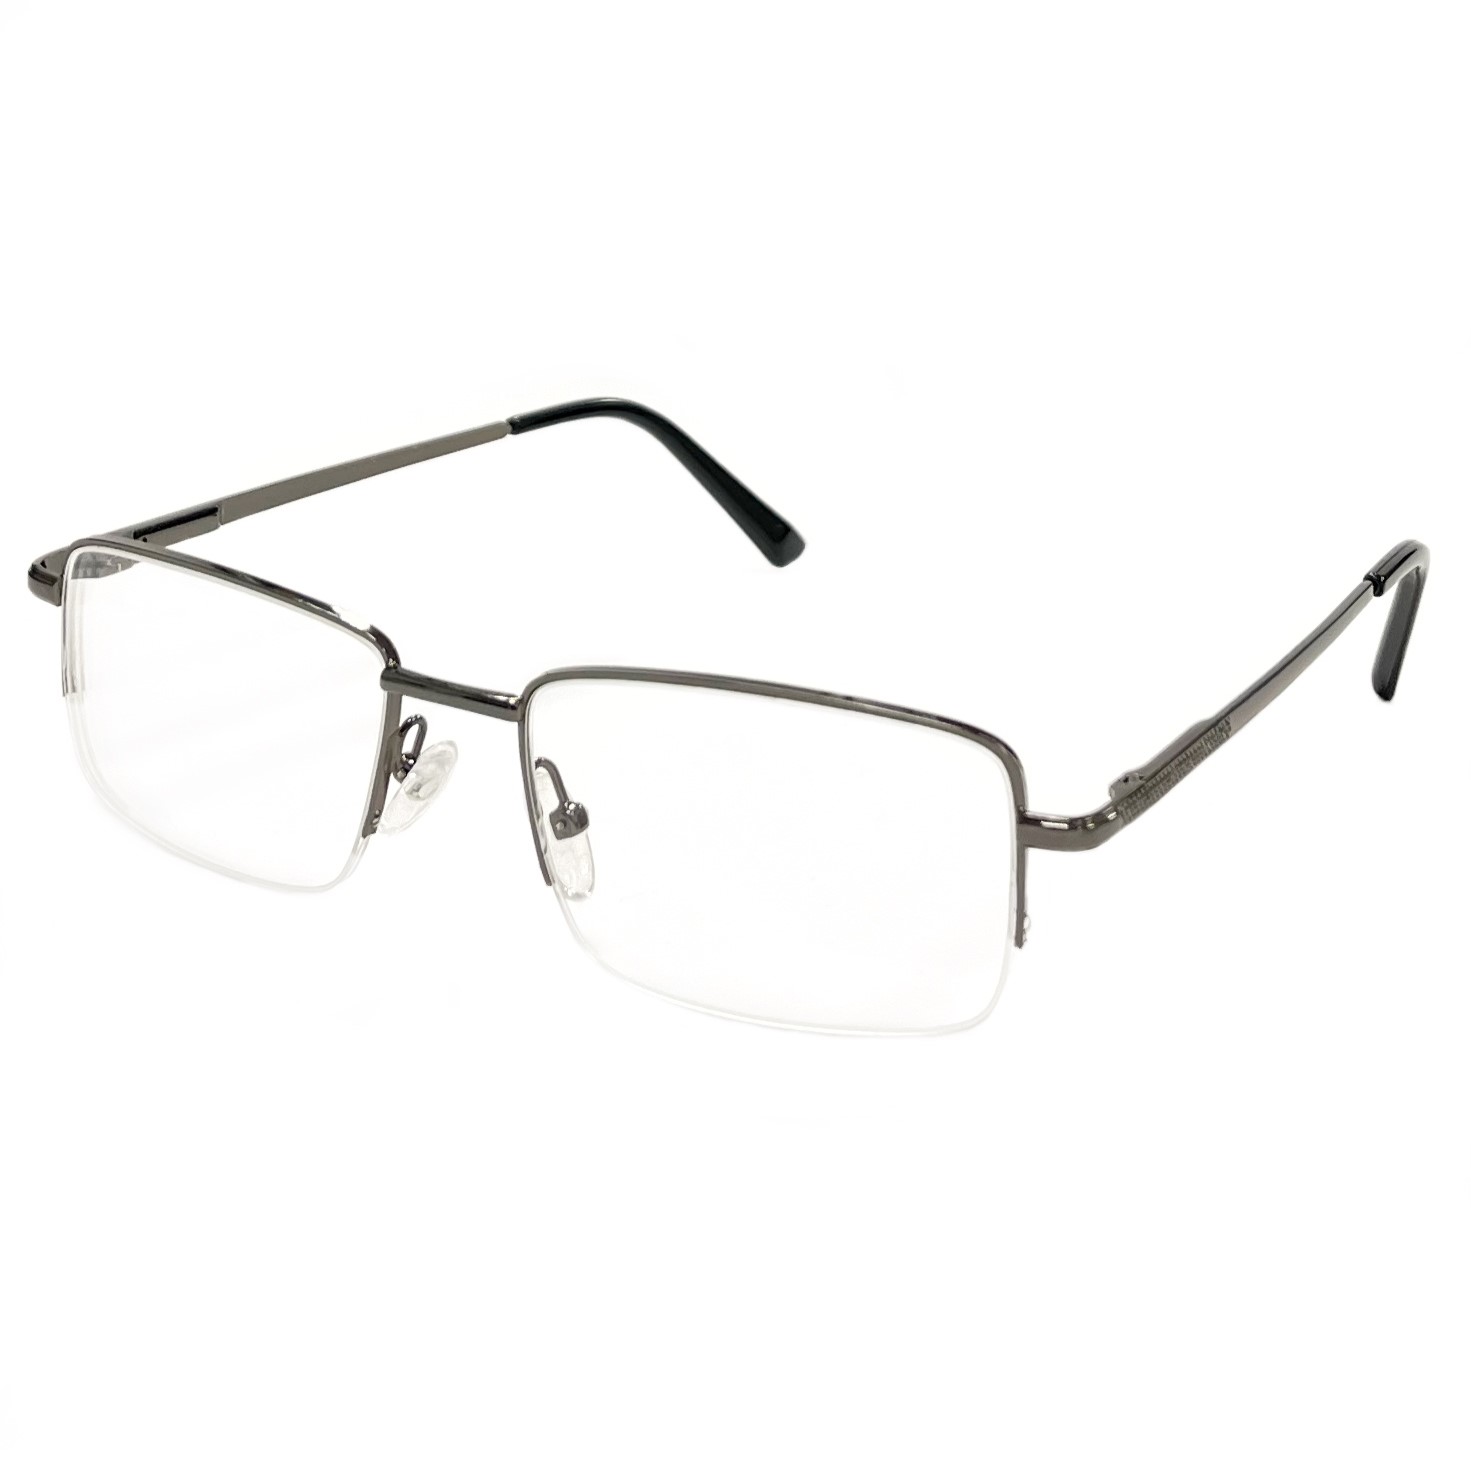 Купить Готовые очки для зрения Fedrov с диоптриями мужские корригирующие -1.5